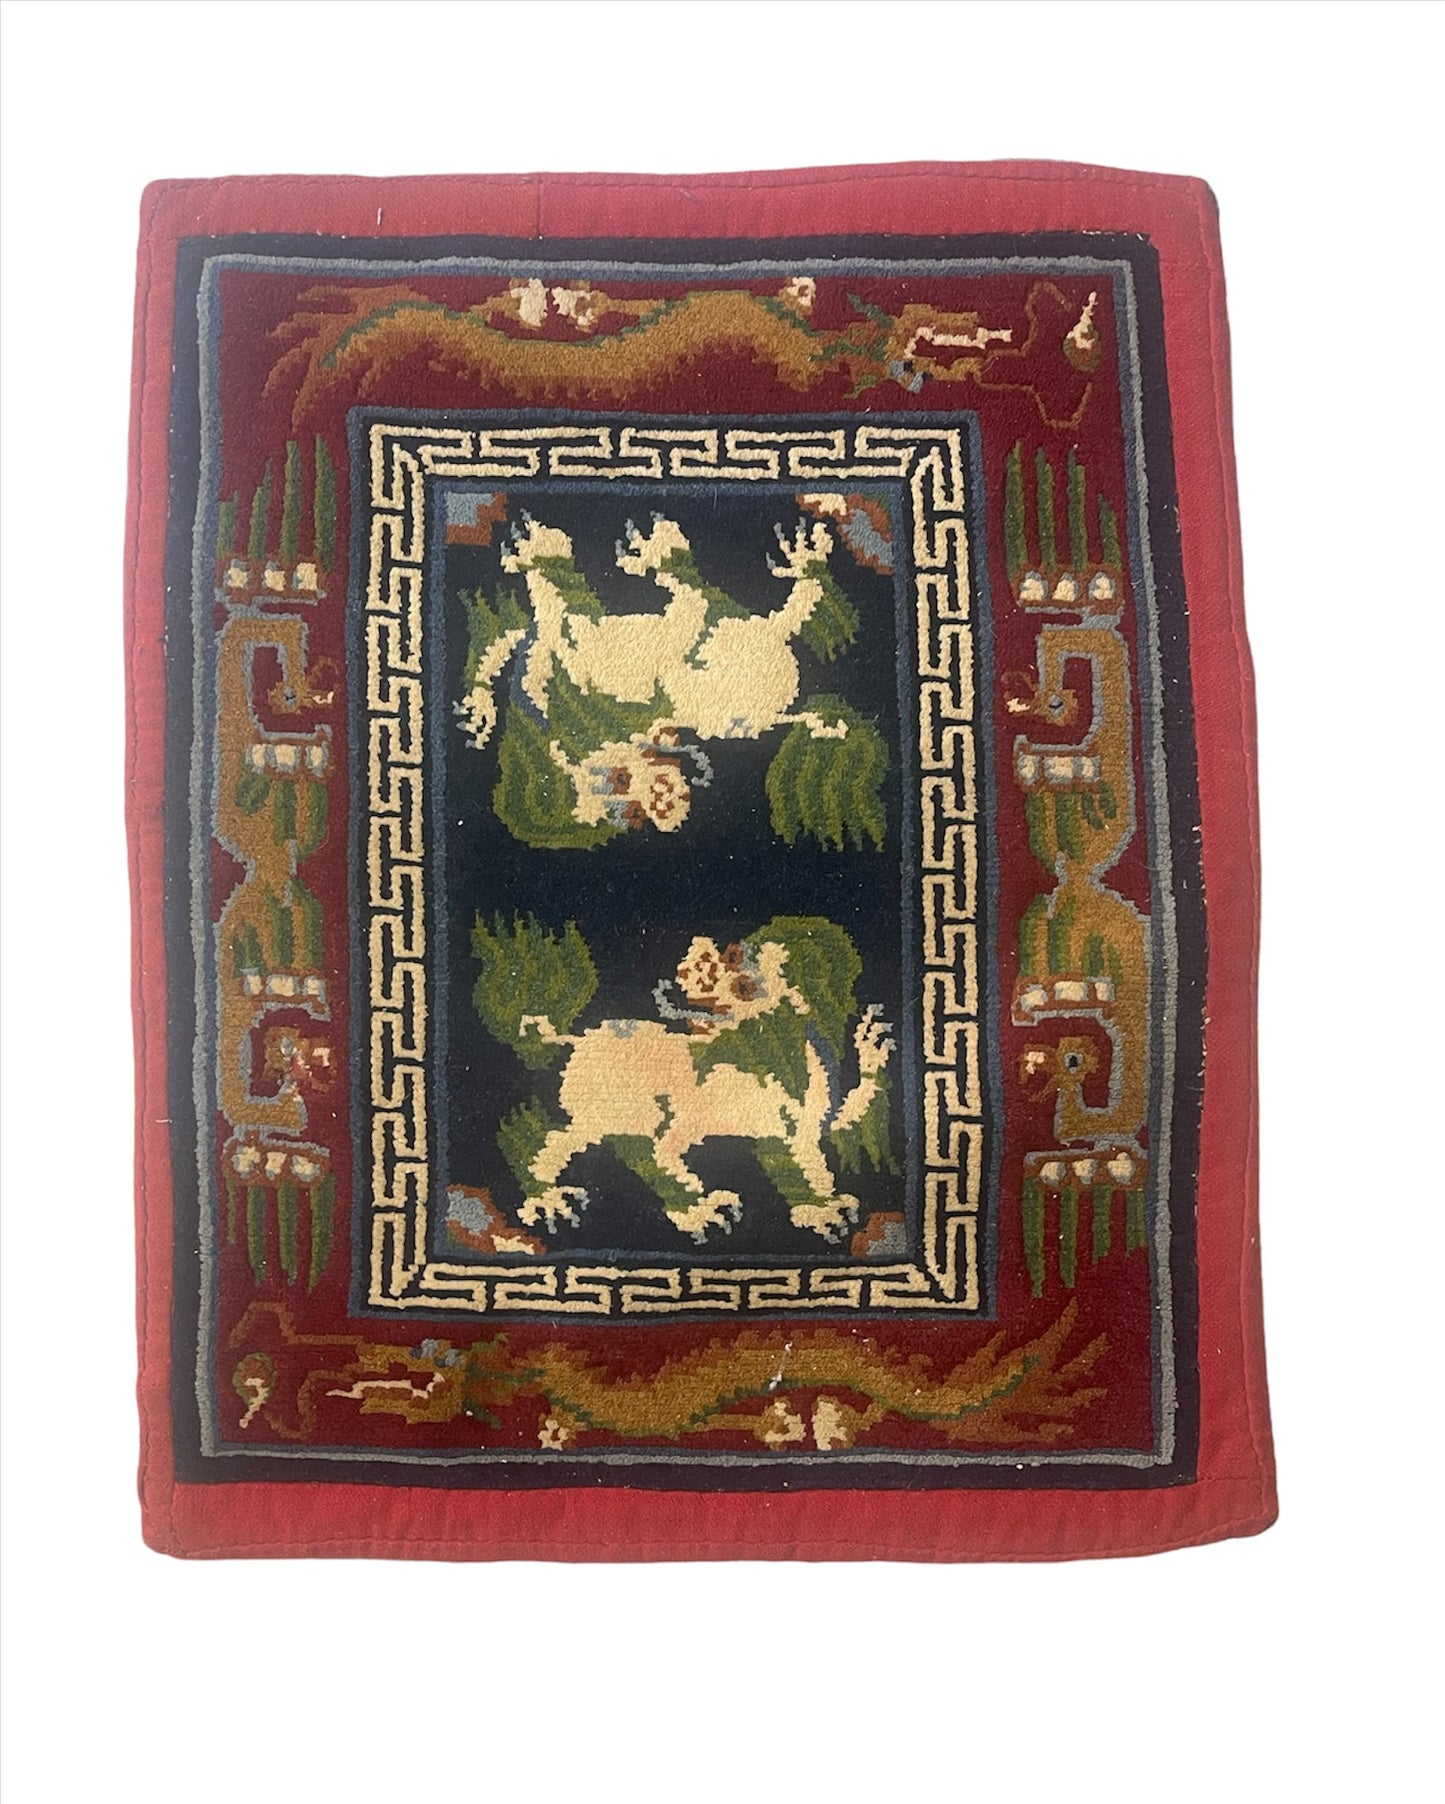 A vintage Tibetan meditation rug / saddle rug topper